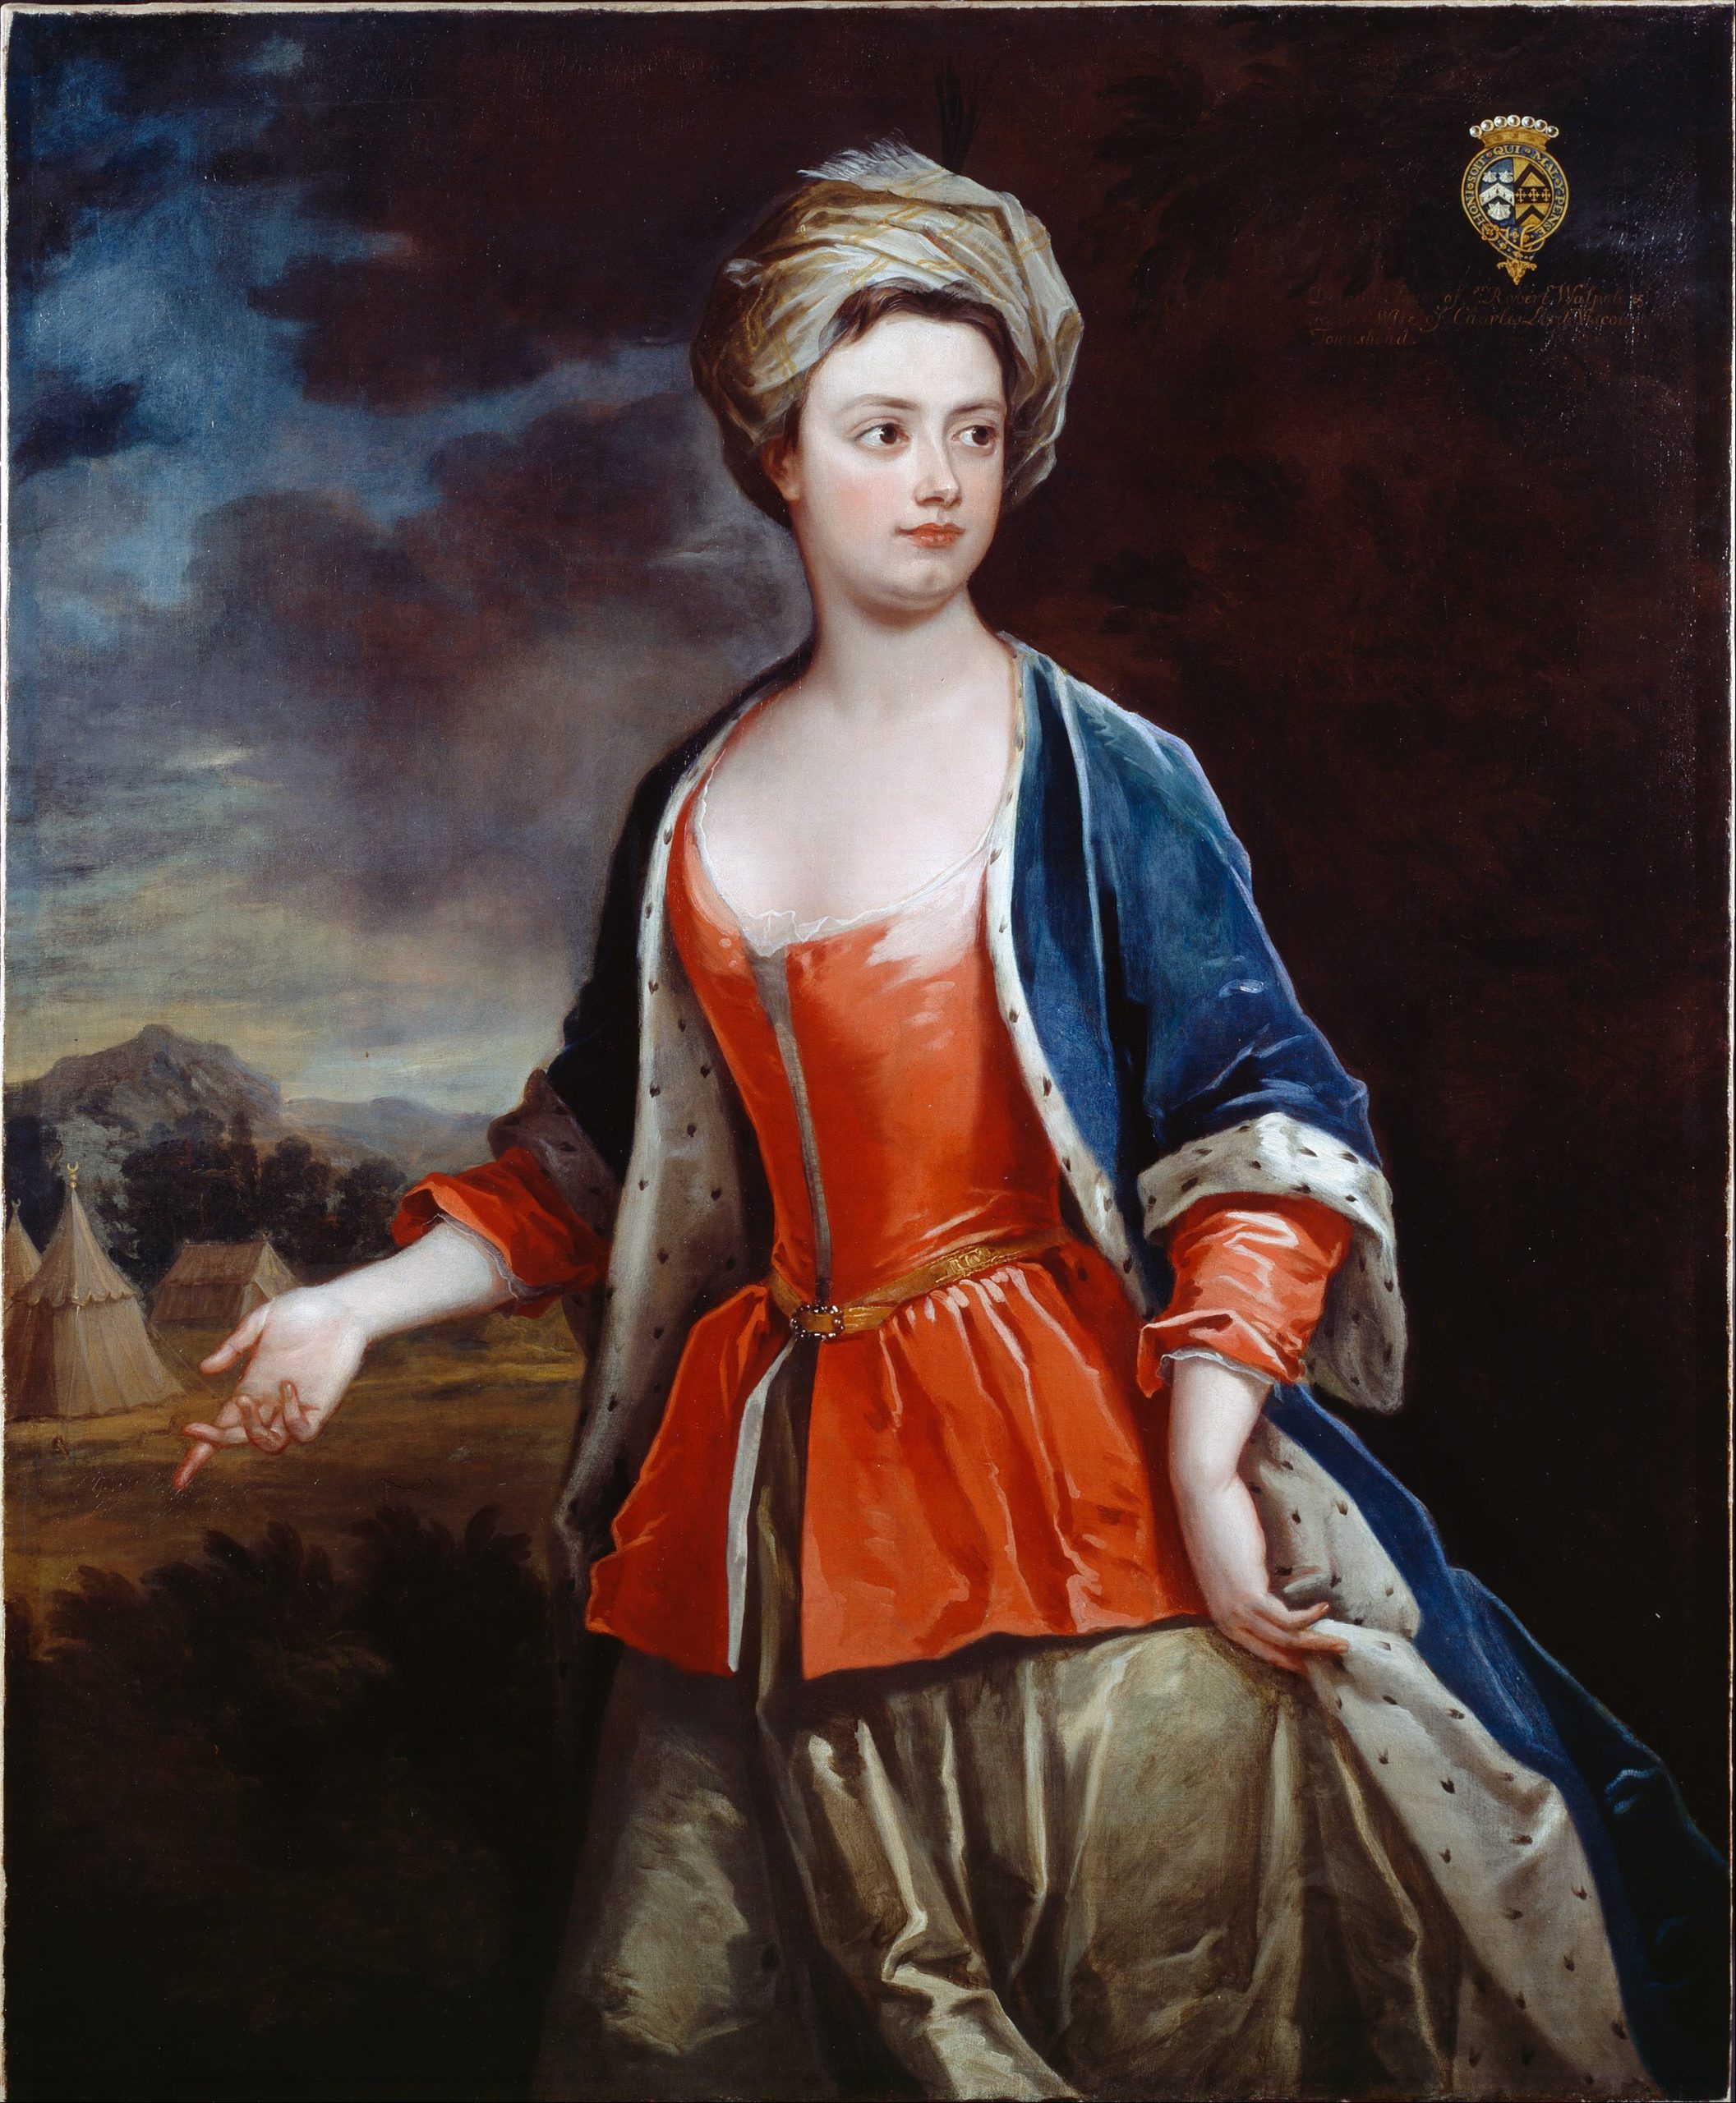 Lady Dorothy Walpole s-a îndrăgostit de bărbatul care i-a devenit torționar